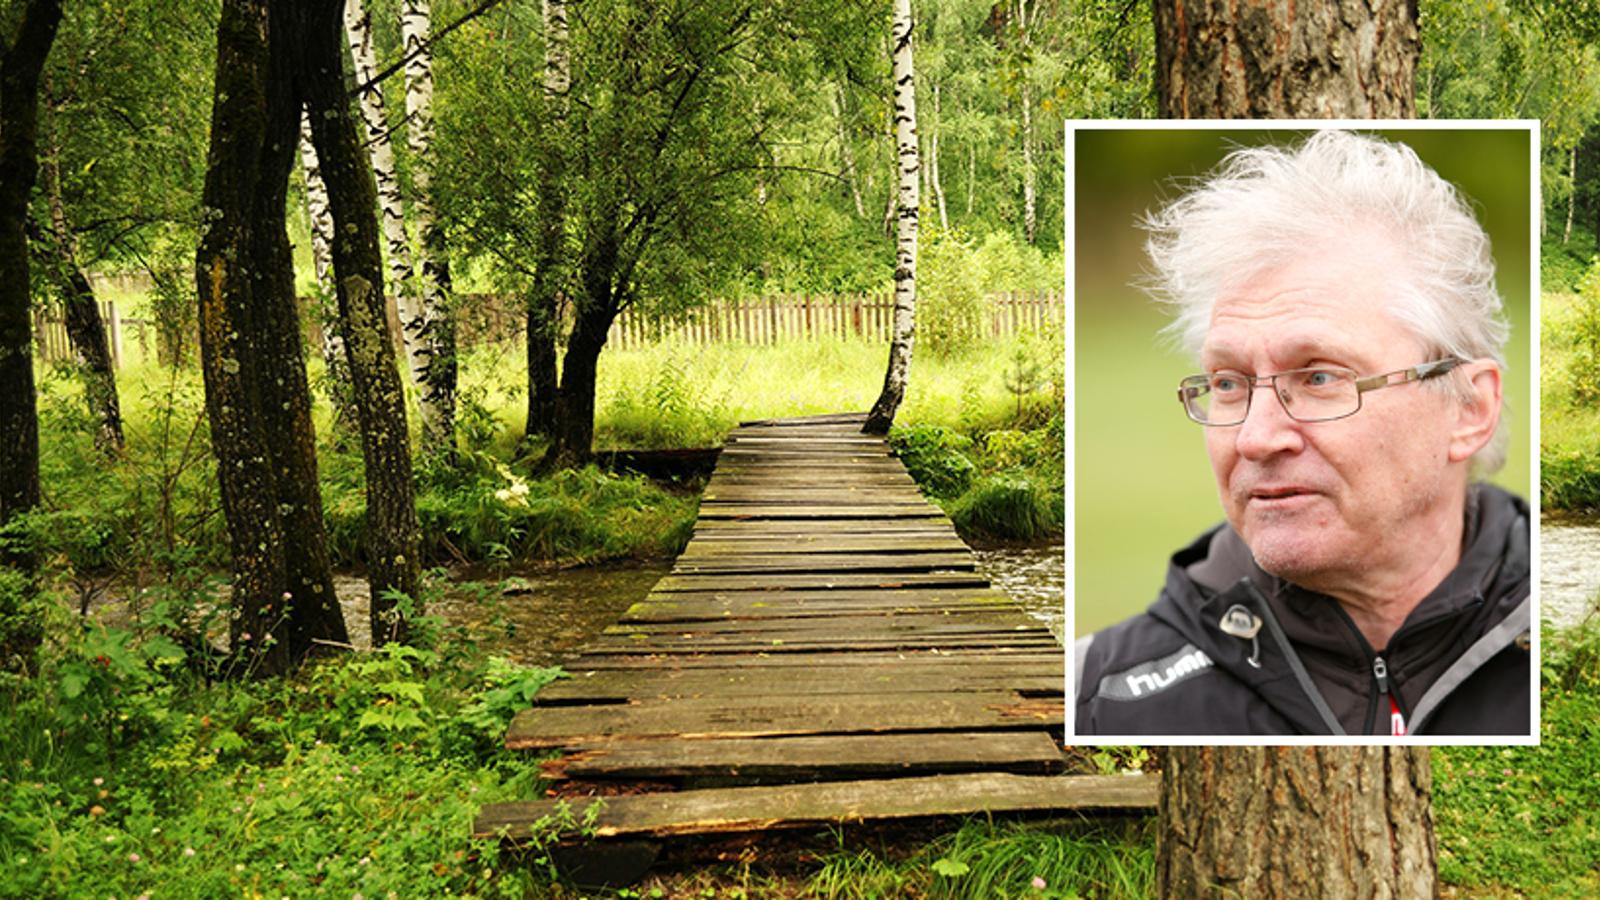 Till vänster: En liten bro av trä, och nedanför rinner det vatten från en liten å. Till höger: Porträttbild av Tapio Kinnunen. Han tittar till vänster om kameran.